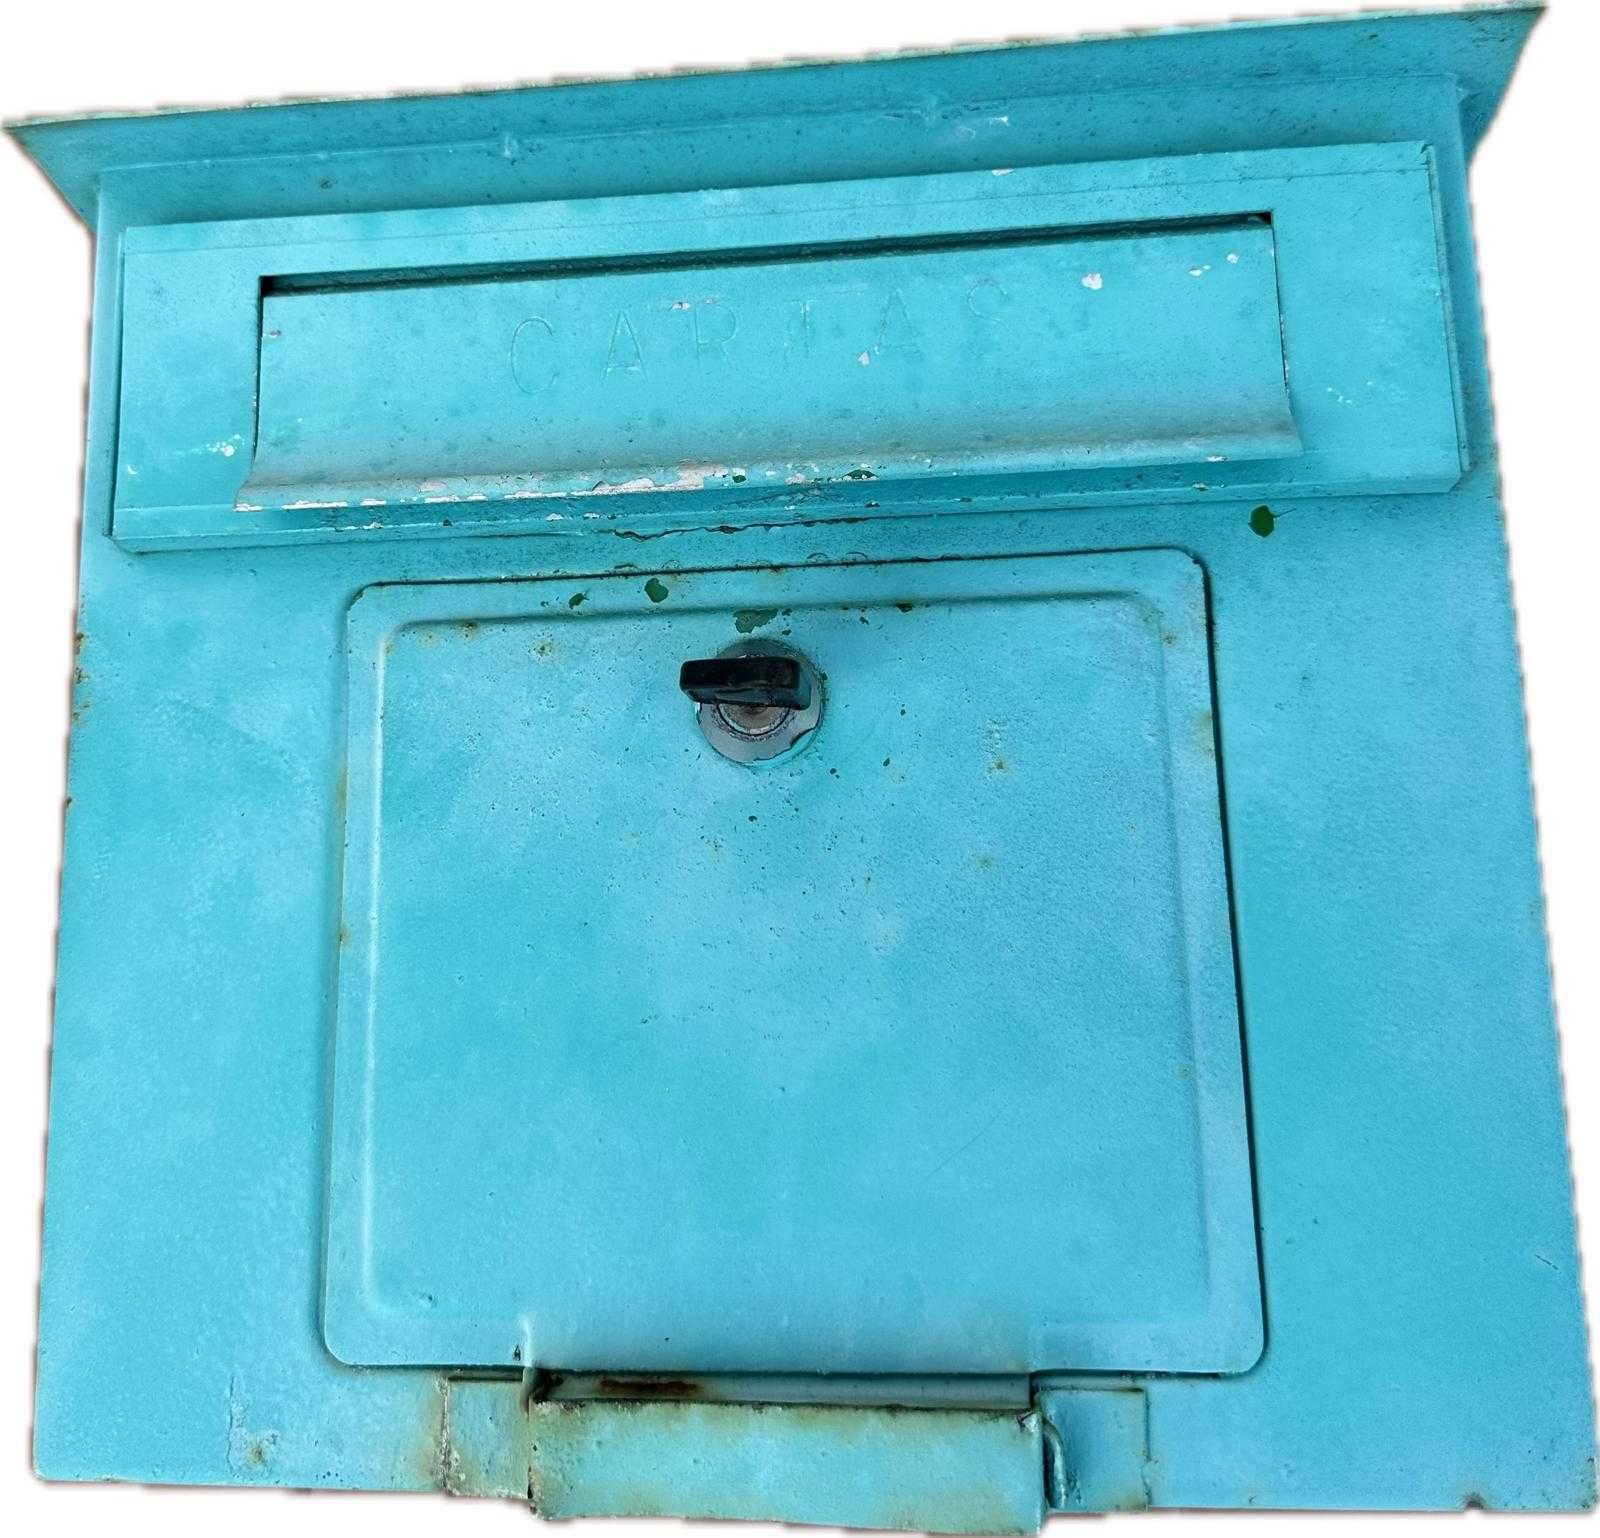 Caixa do correio clássica. 27X15X25 cm